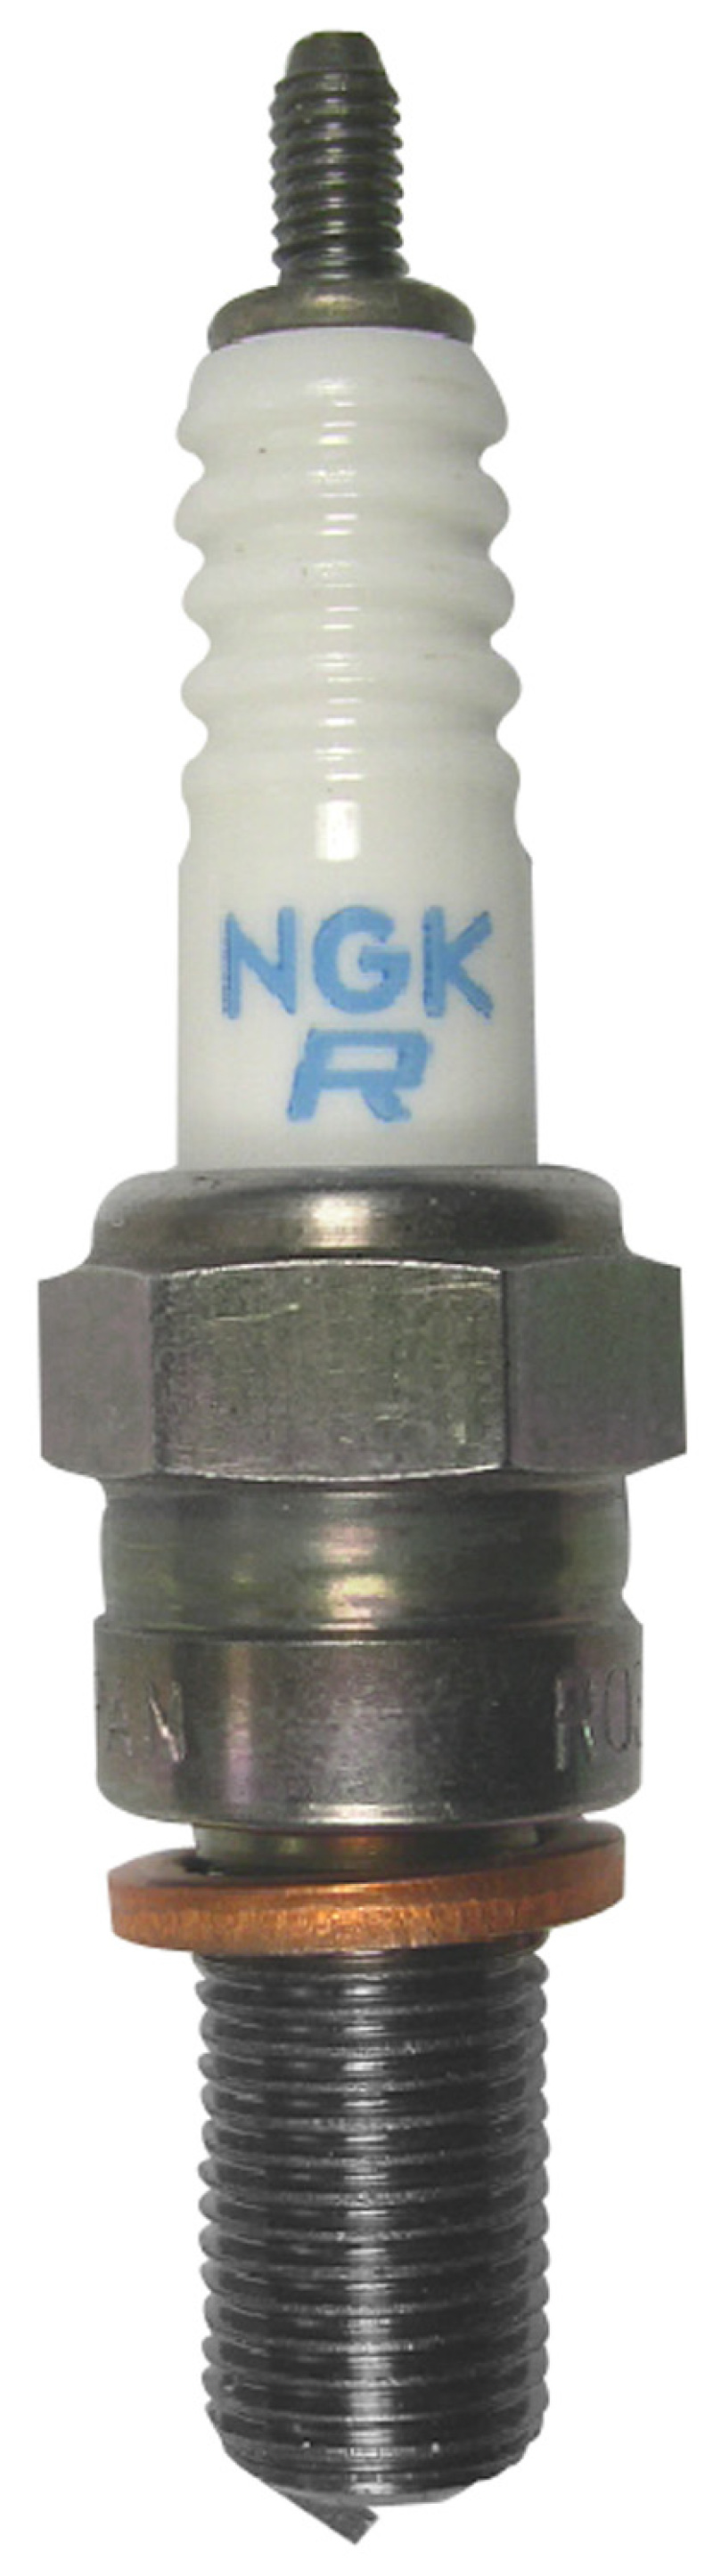 NGK Racing Spark Plug Box of 4 (R0373A-10) - 4940